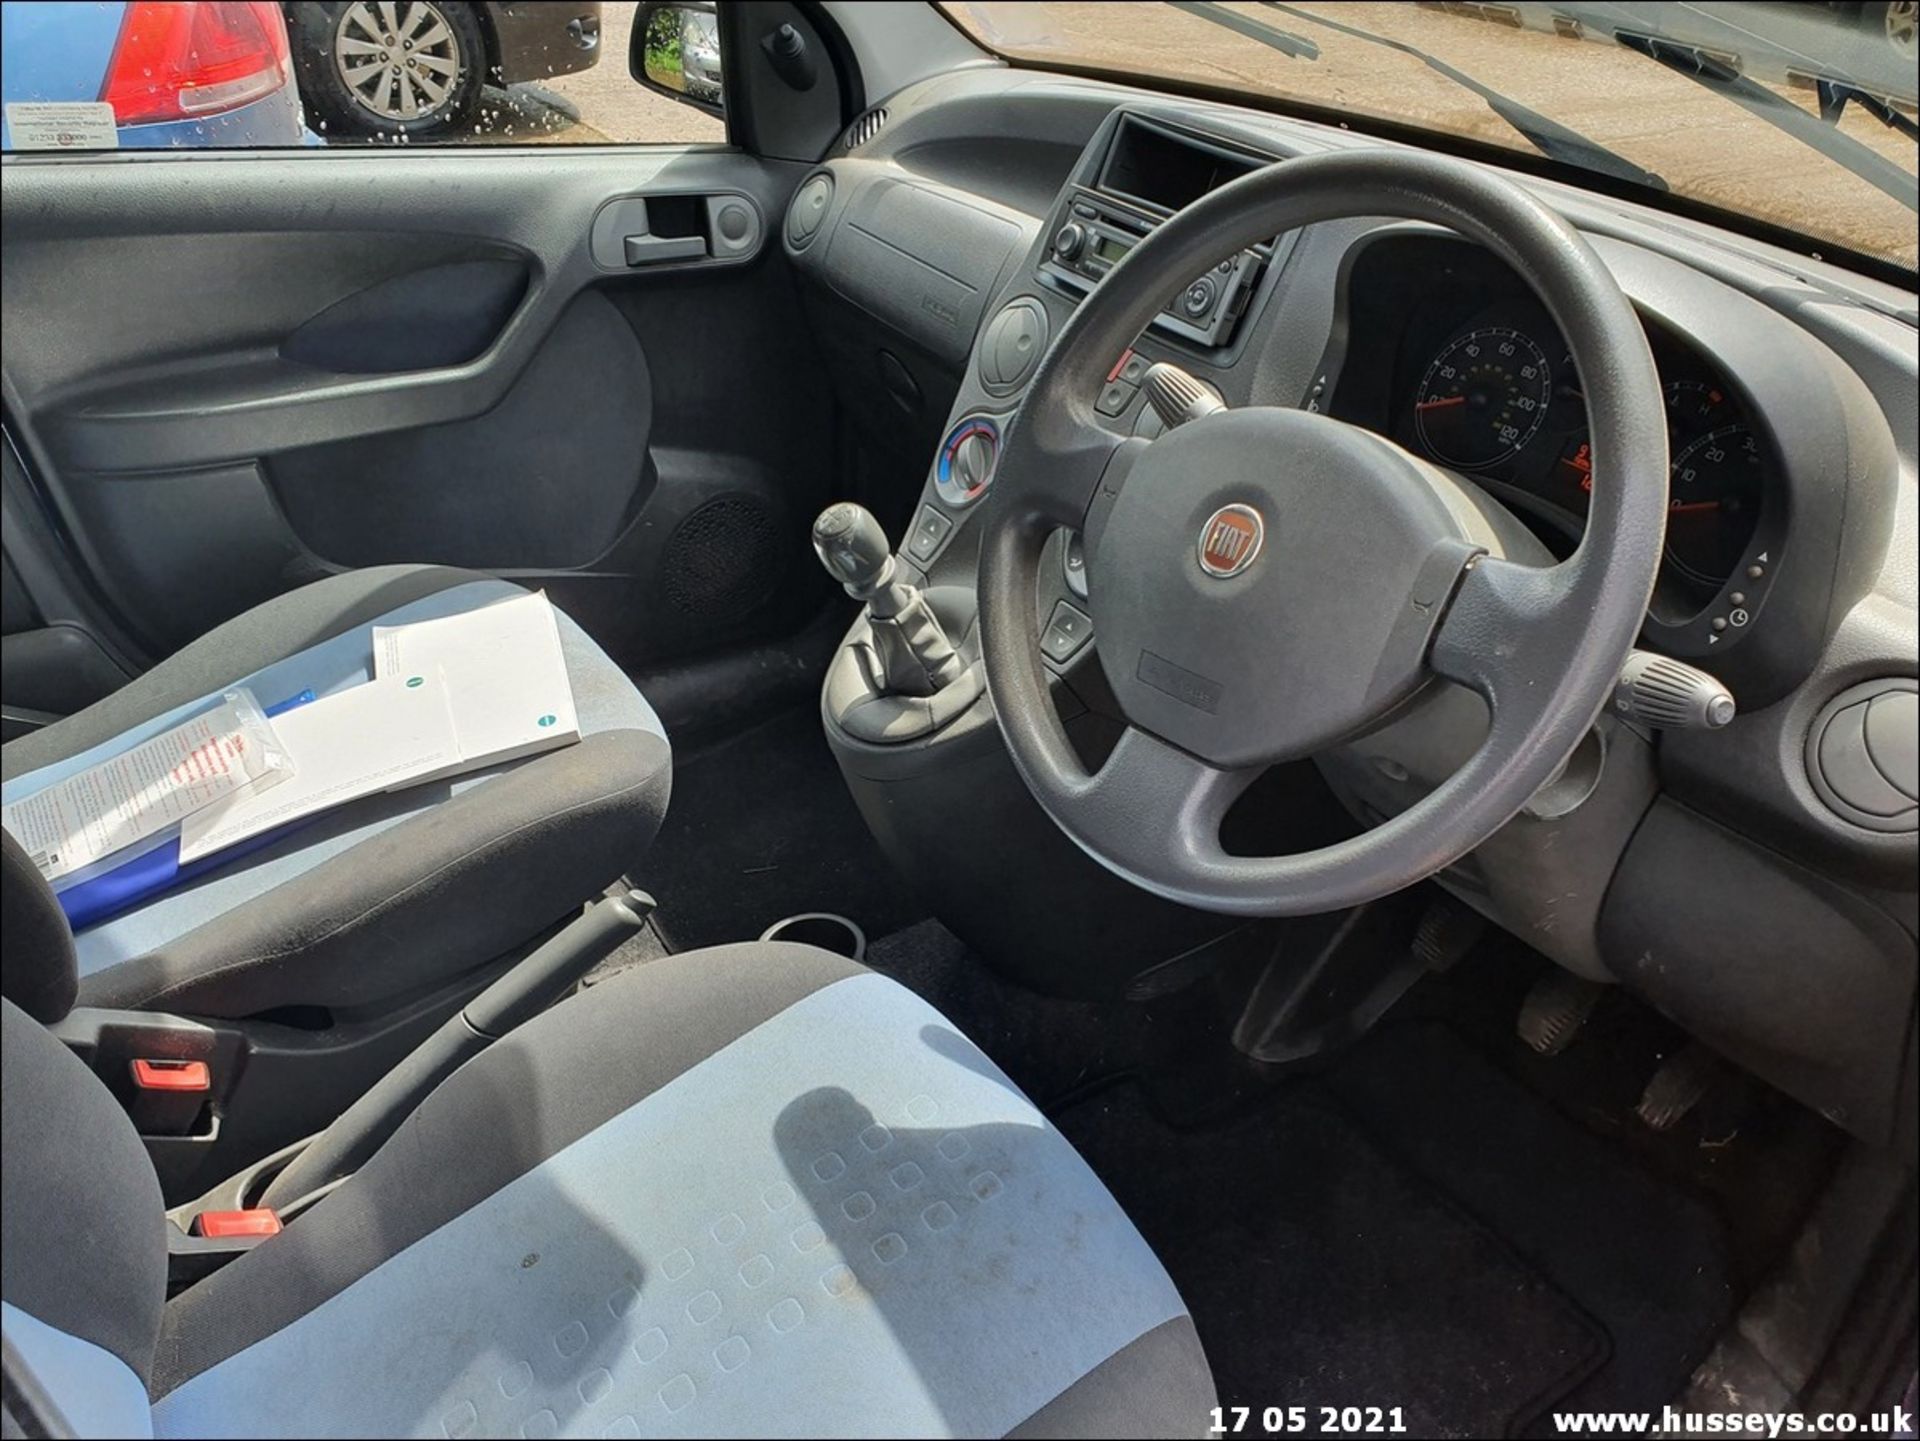 09/09 FIAT PANDA DYNAMIC MULTIJET - 1248cc 5dr Hatchback (Blue, 91k) - Image 8 of 12